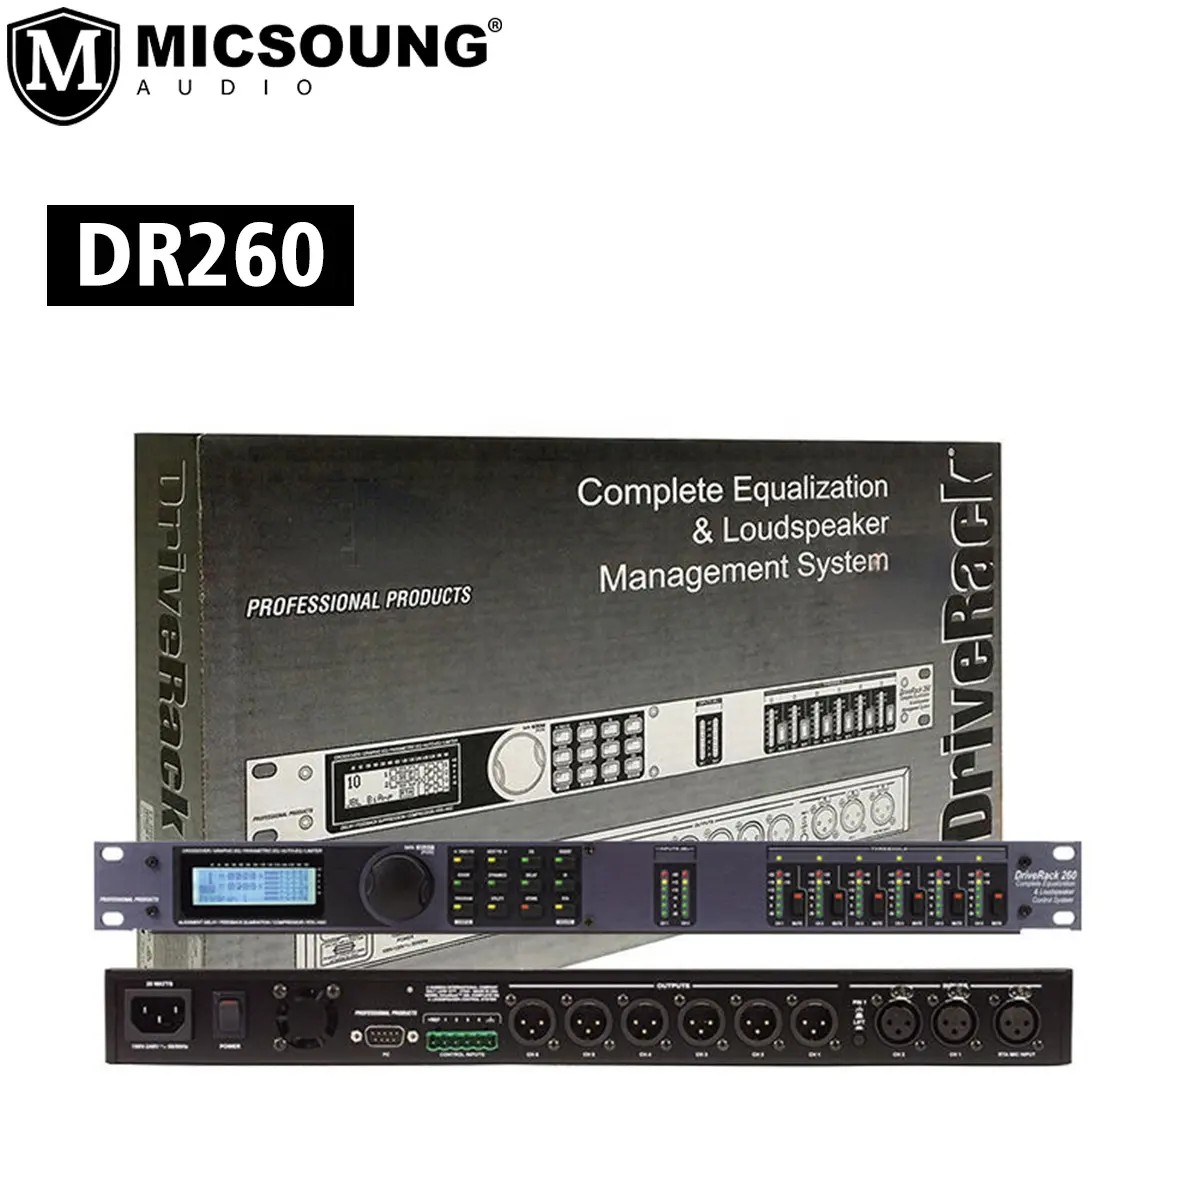 DR260 Professional Digital audio Processor 2 inputs 6 Output Complete Equalization Loudspeaker Management System